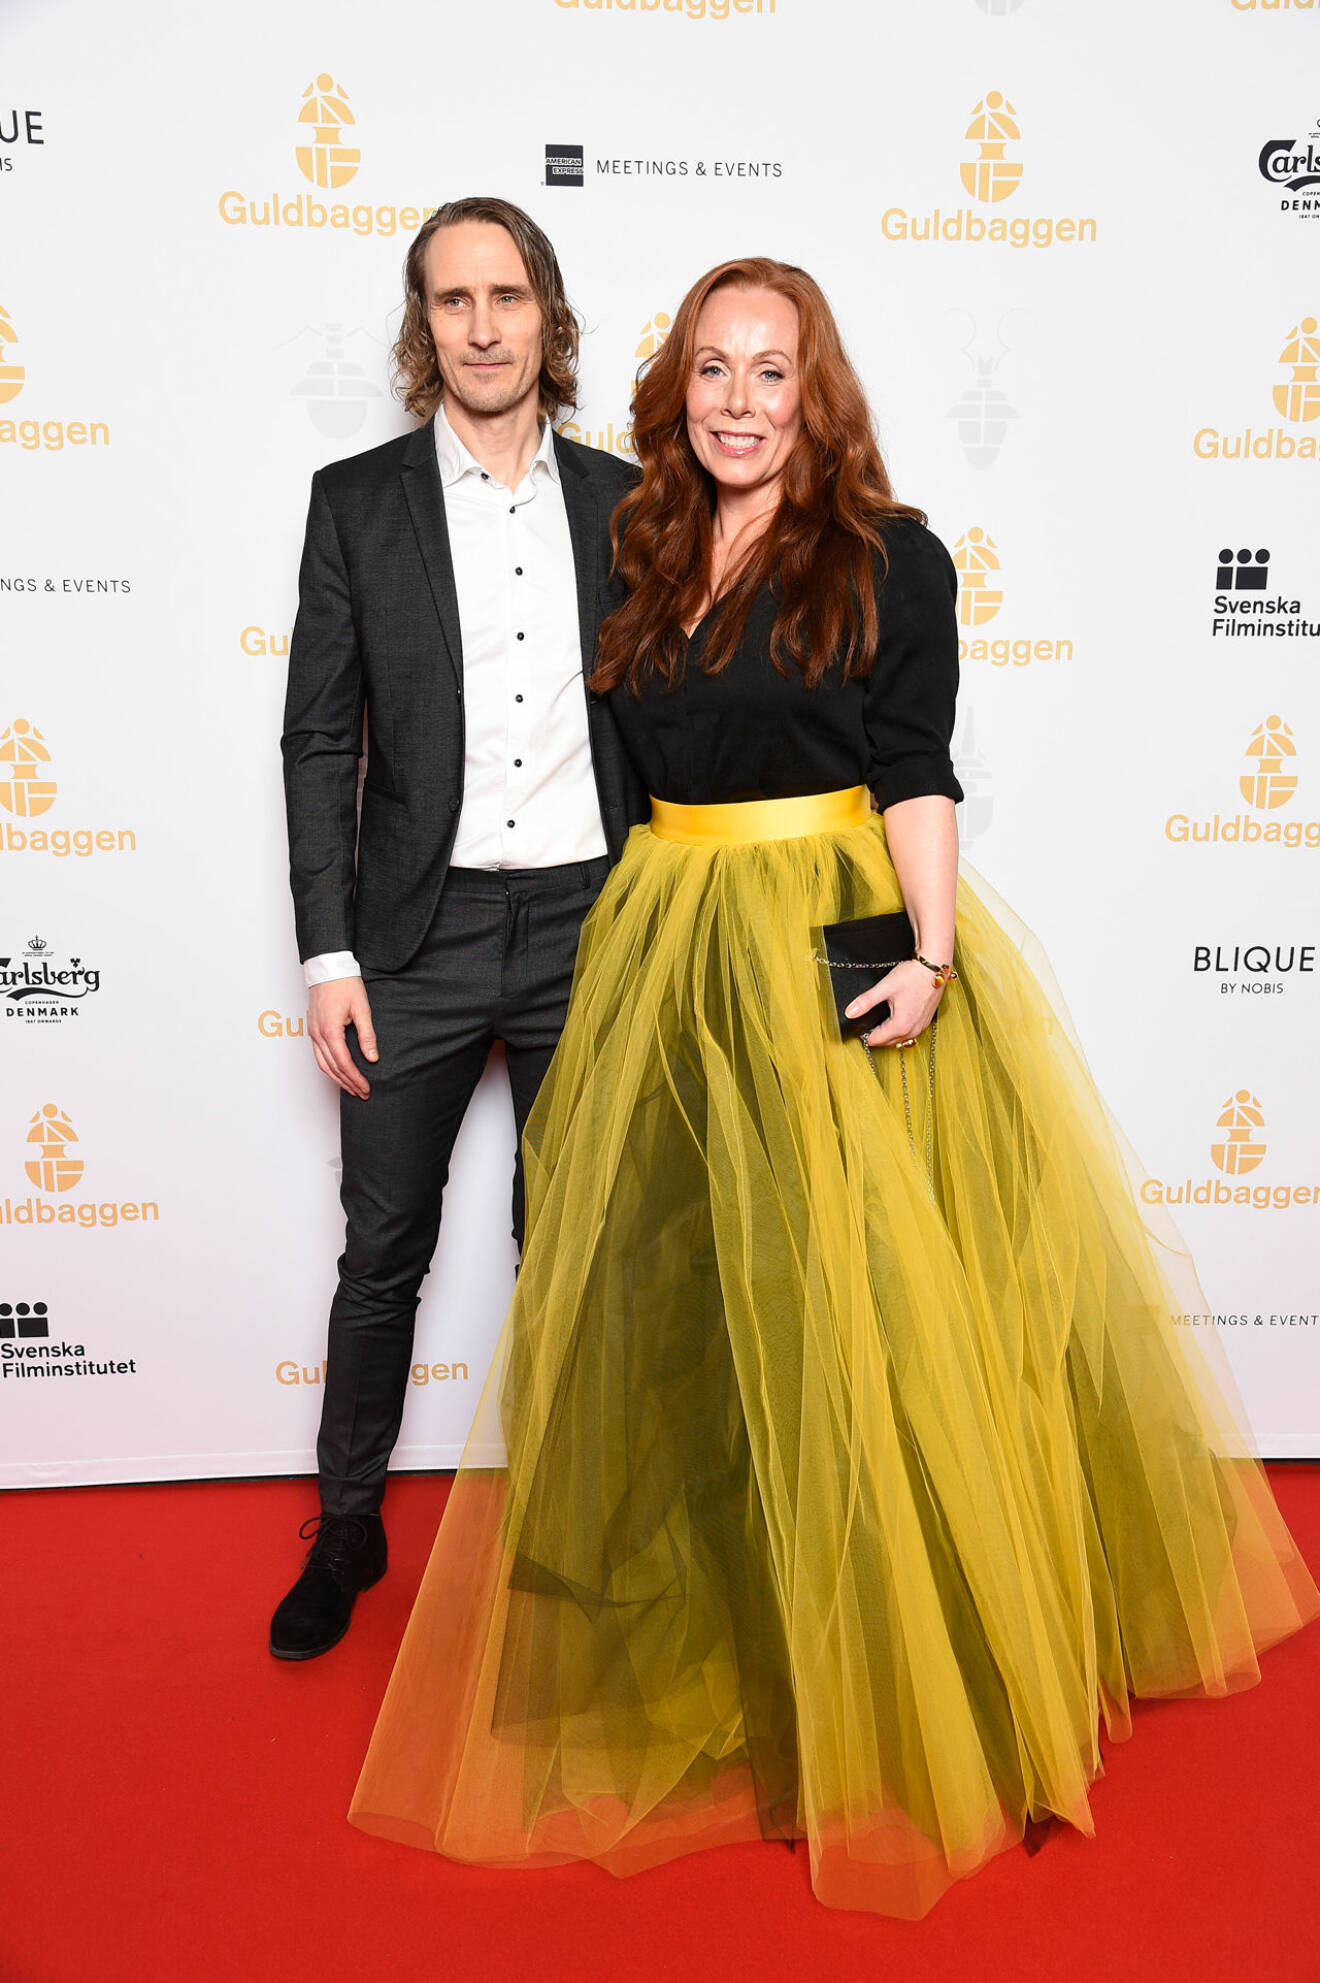 Rachel Mohlin och Håkan Messing på röda mattan på Guldbaggegalan 2020